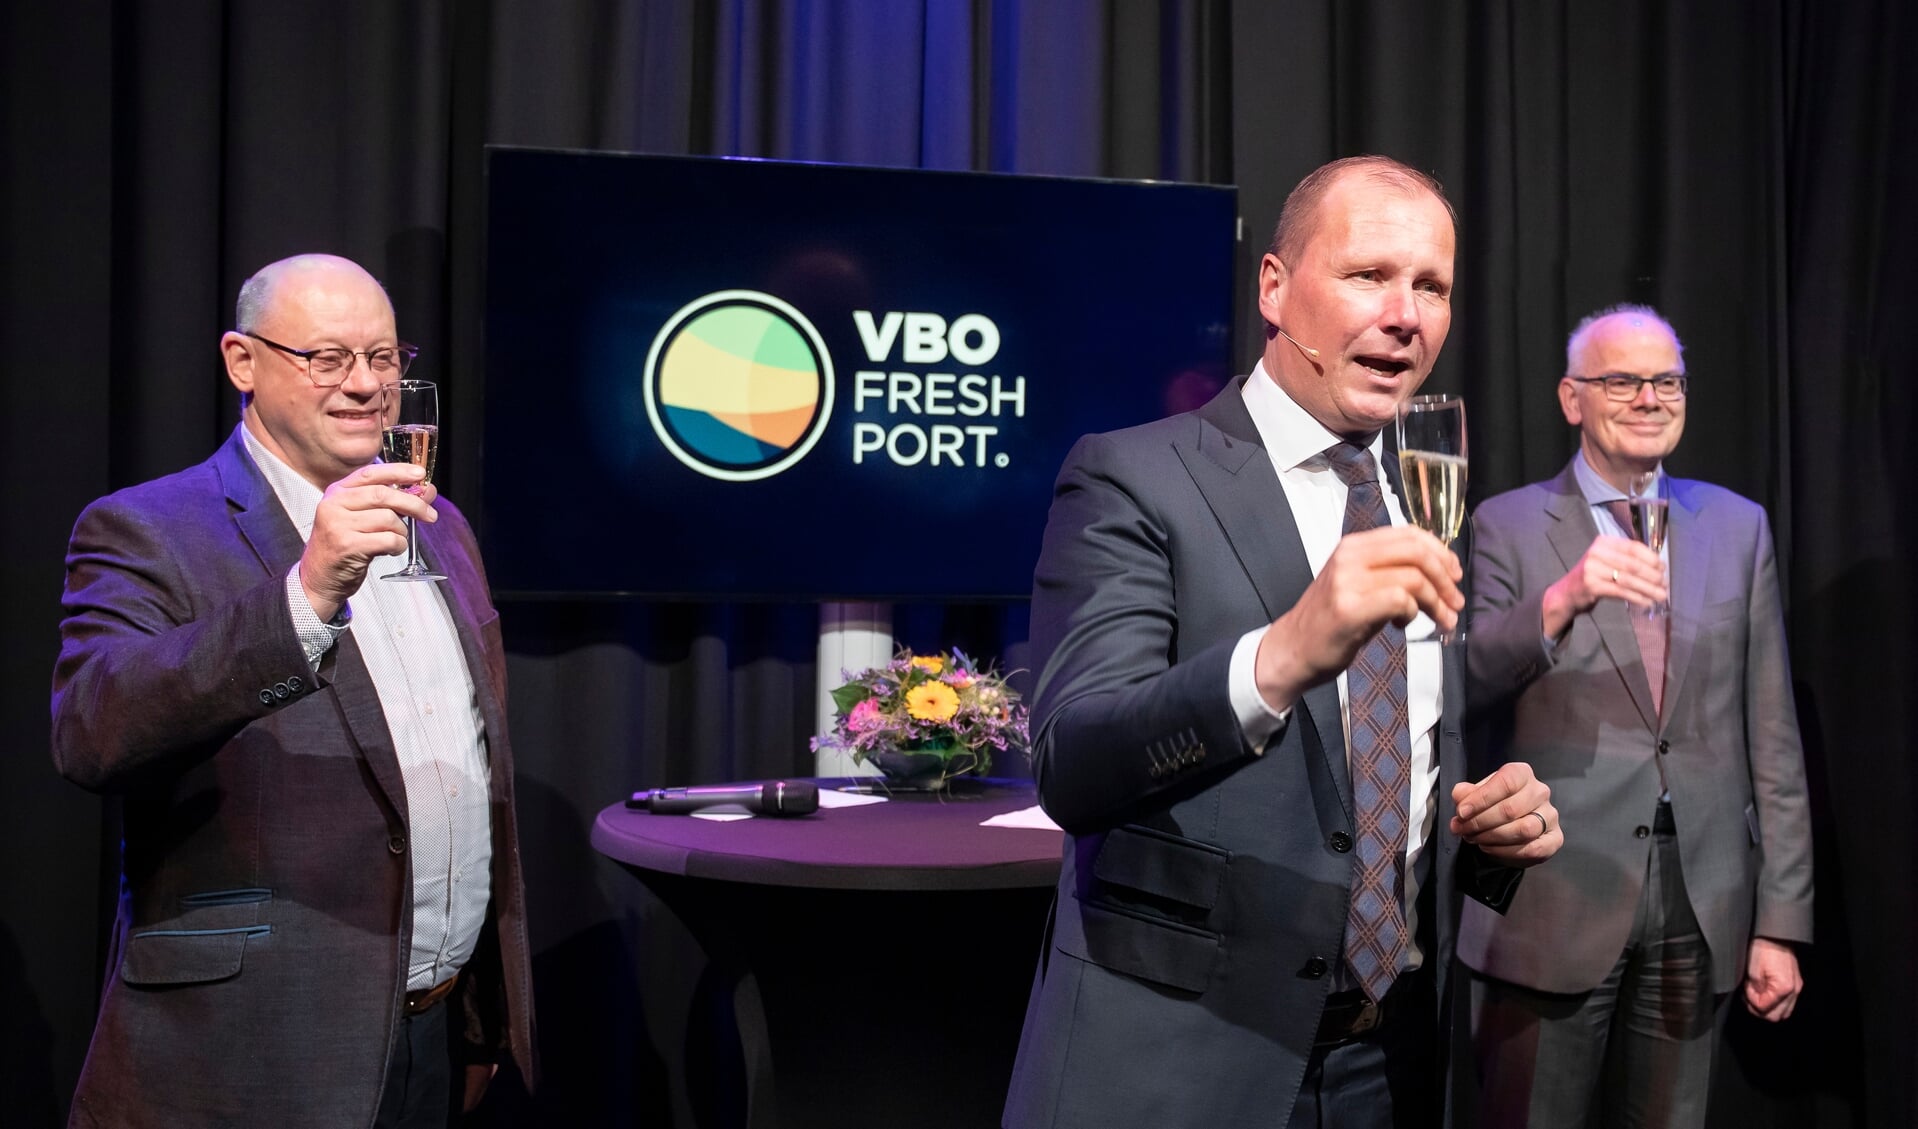 Bestuurslid Johan in 't Veld, voorzitter Jan Willem van Hellemond en burgemeester Jan van Belzen brengen een toost uit op het nieuwe jaar en de nieuwe naam. 